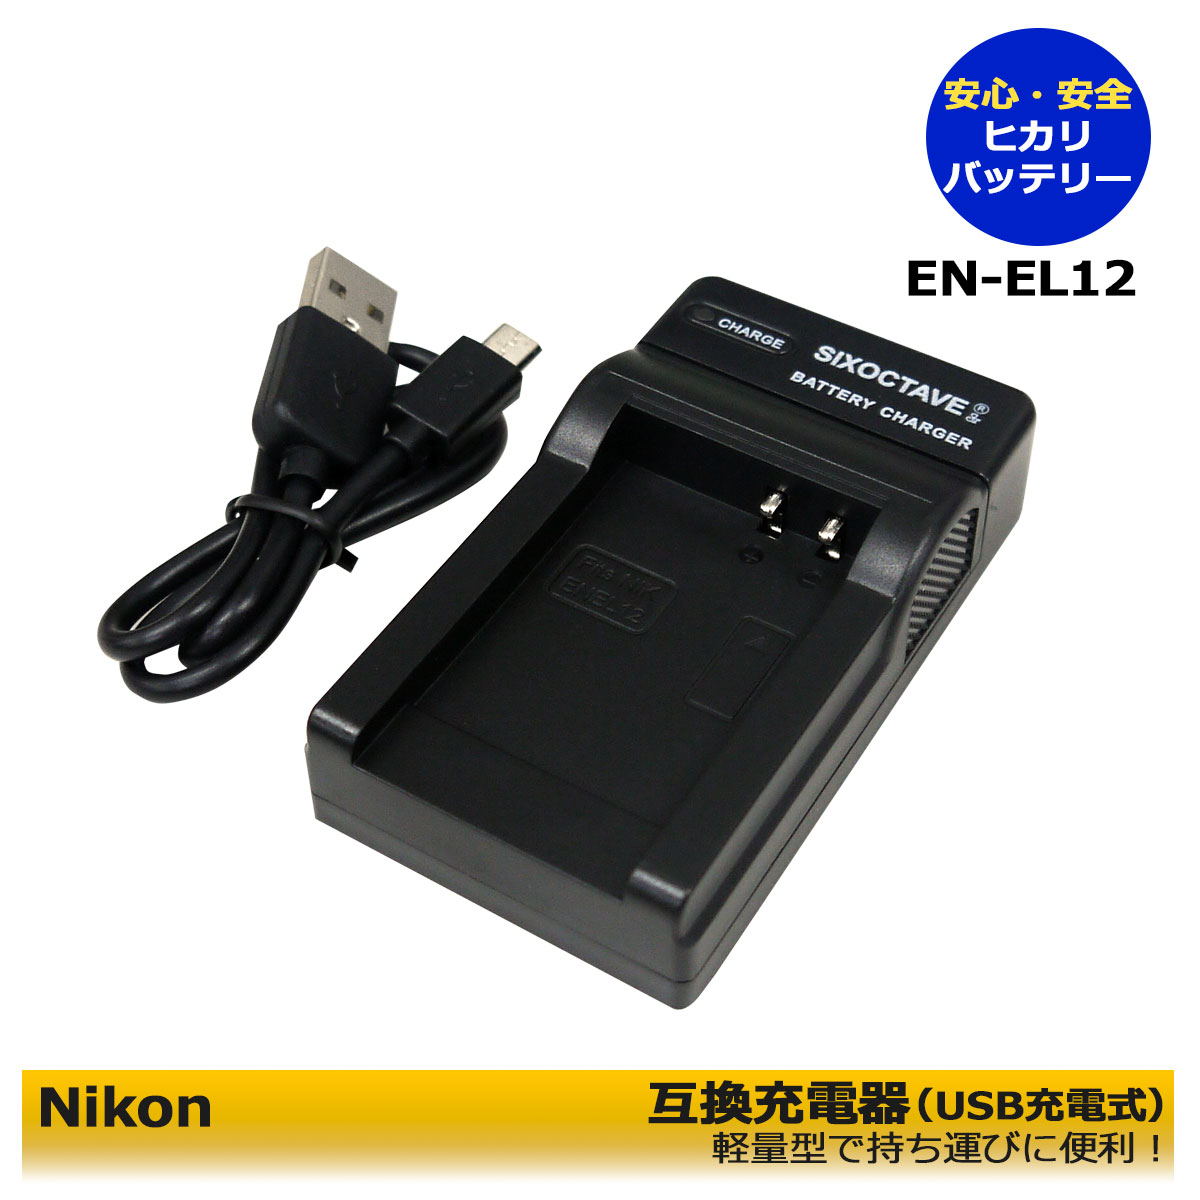 ニコン EN-EL15 Micro USB付き 急速充電器 互換品